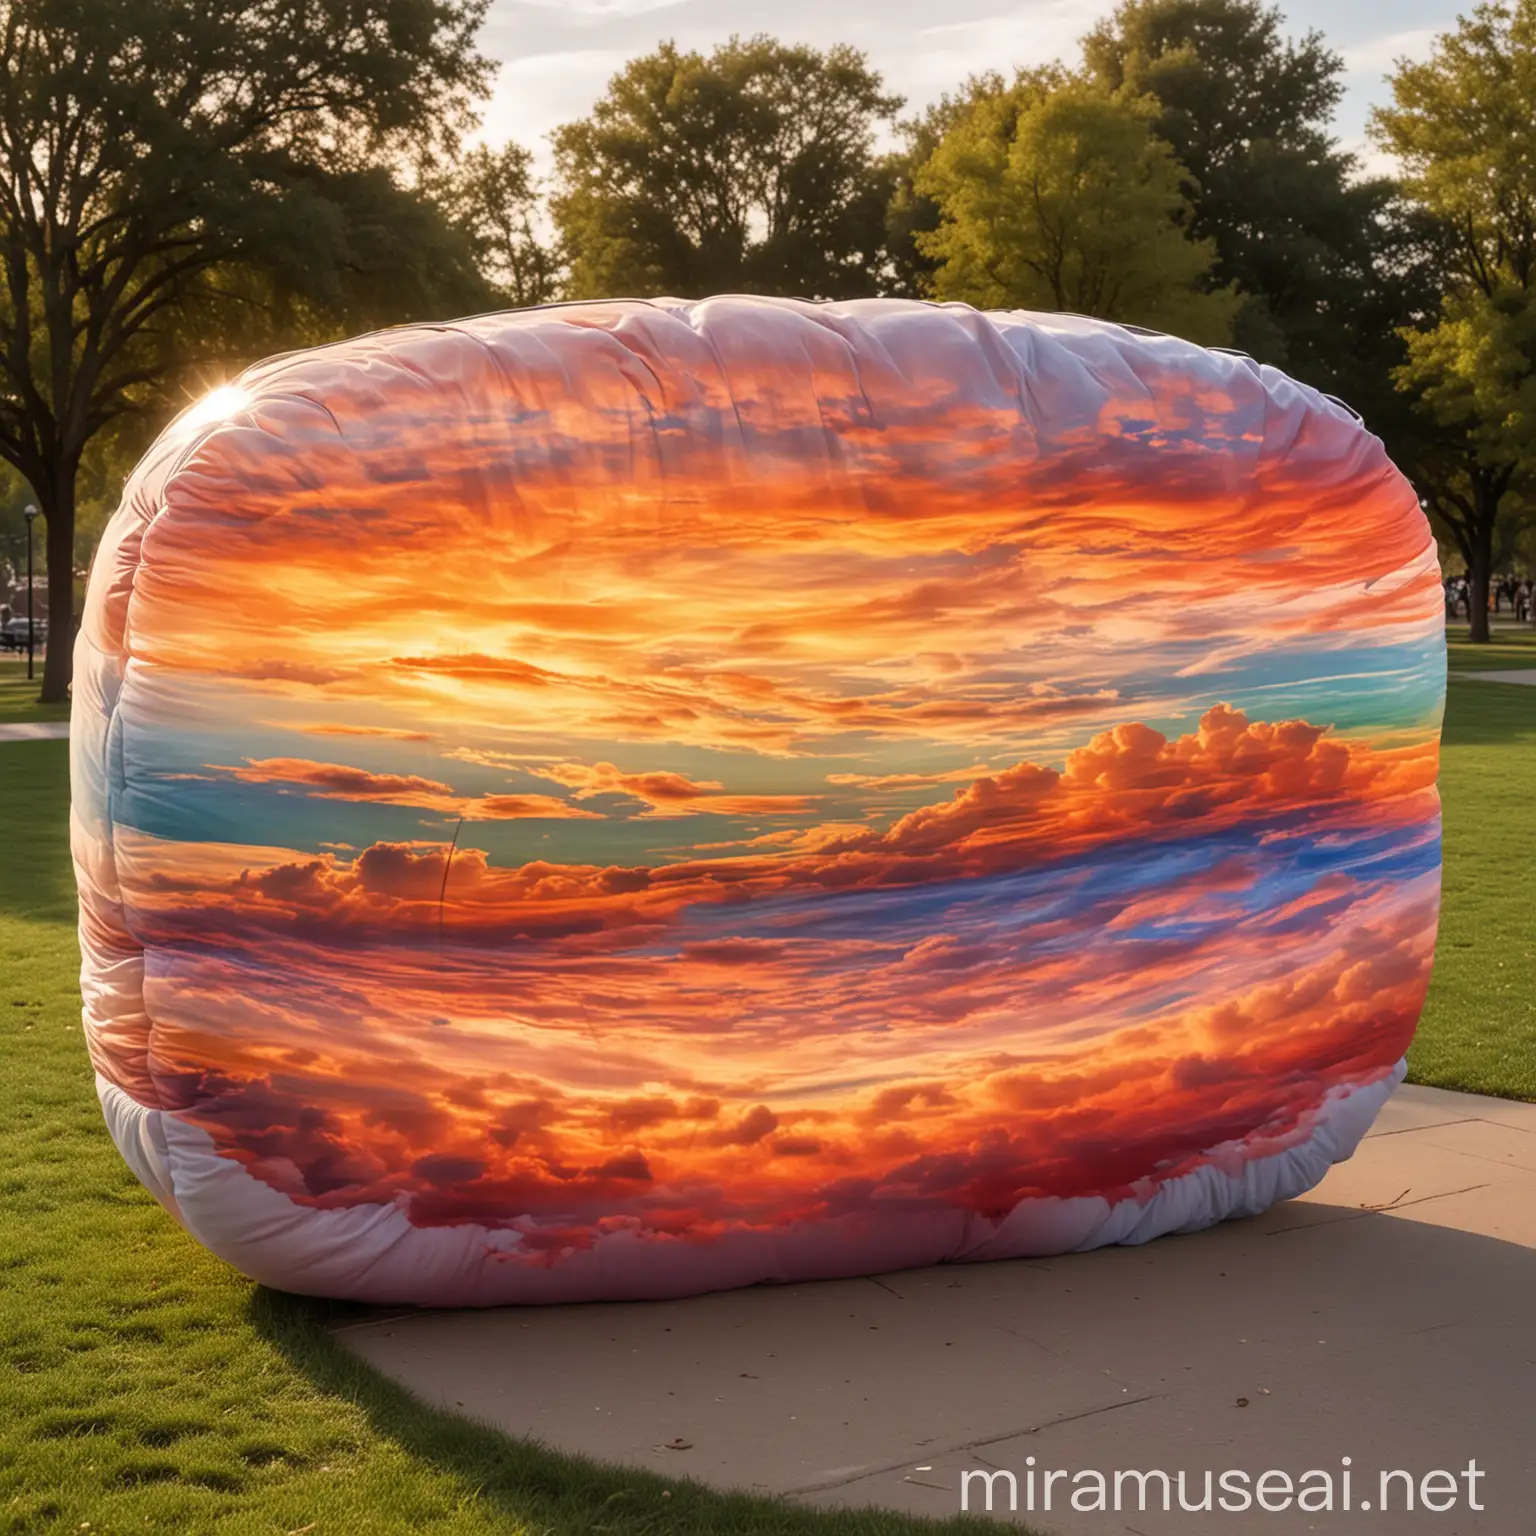 Большое прозрачное облако арт - объект из нескольких линий цвета заката в общественном парке в Америке и вокруг него лежат пуфики